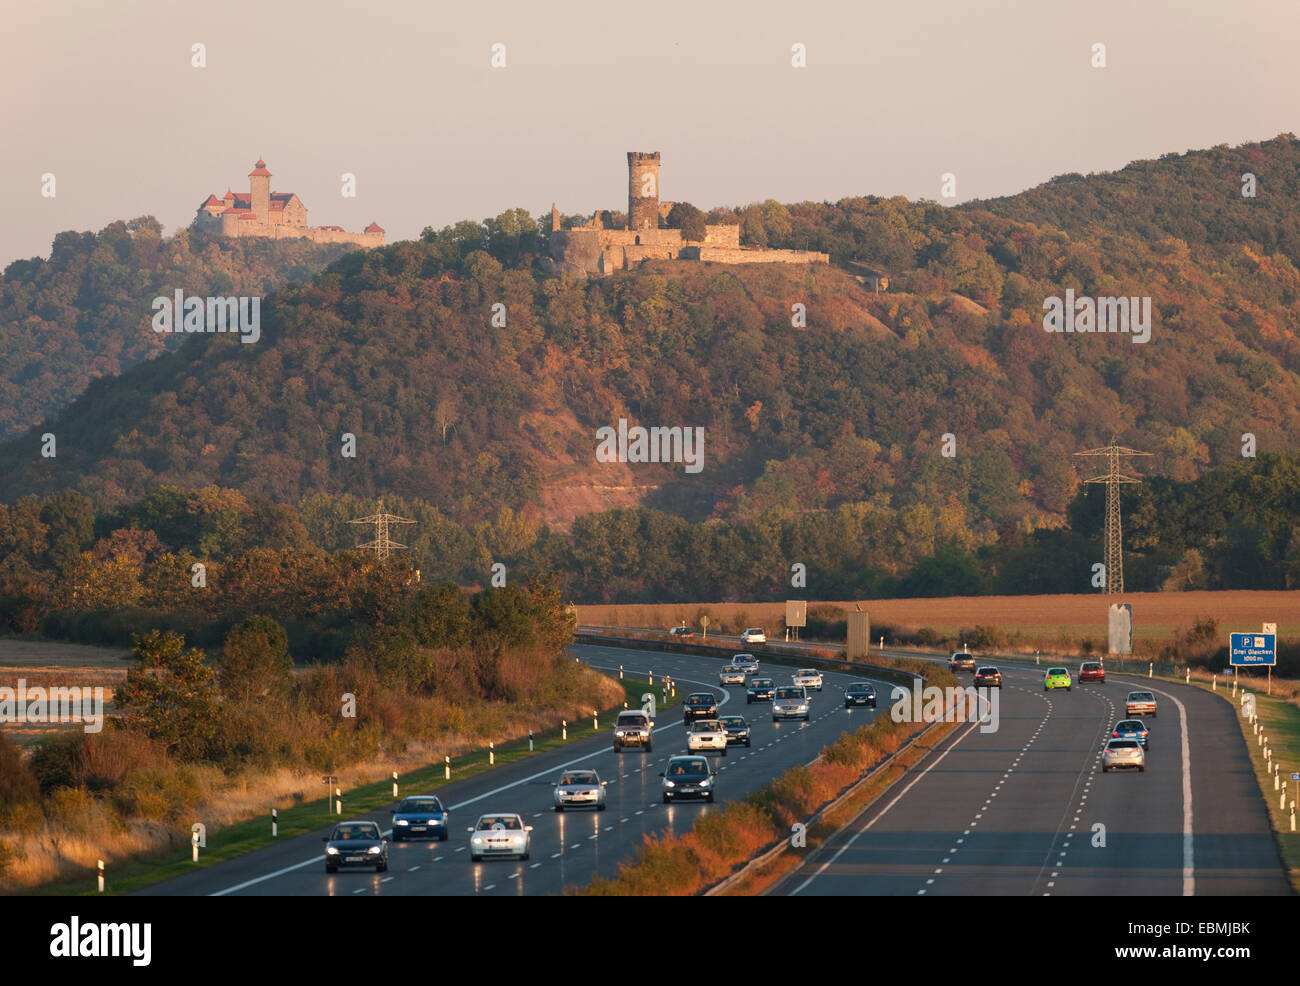 Autobahn A4, Wachsenburg Muehlburg y castillos en la espalda, Muhlberg, Turingia, Alemania Foto de stock